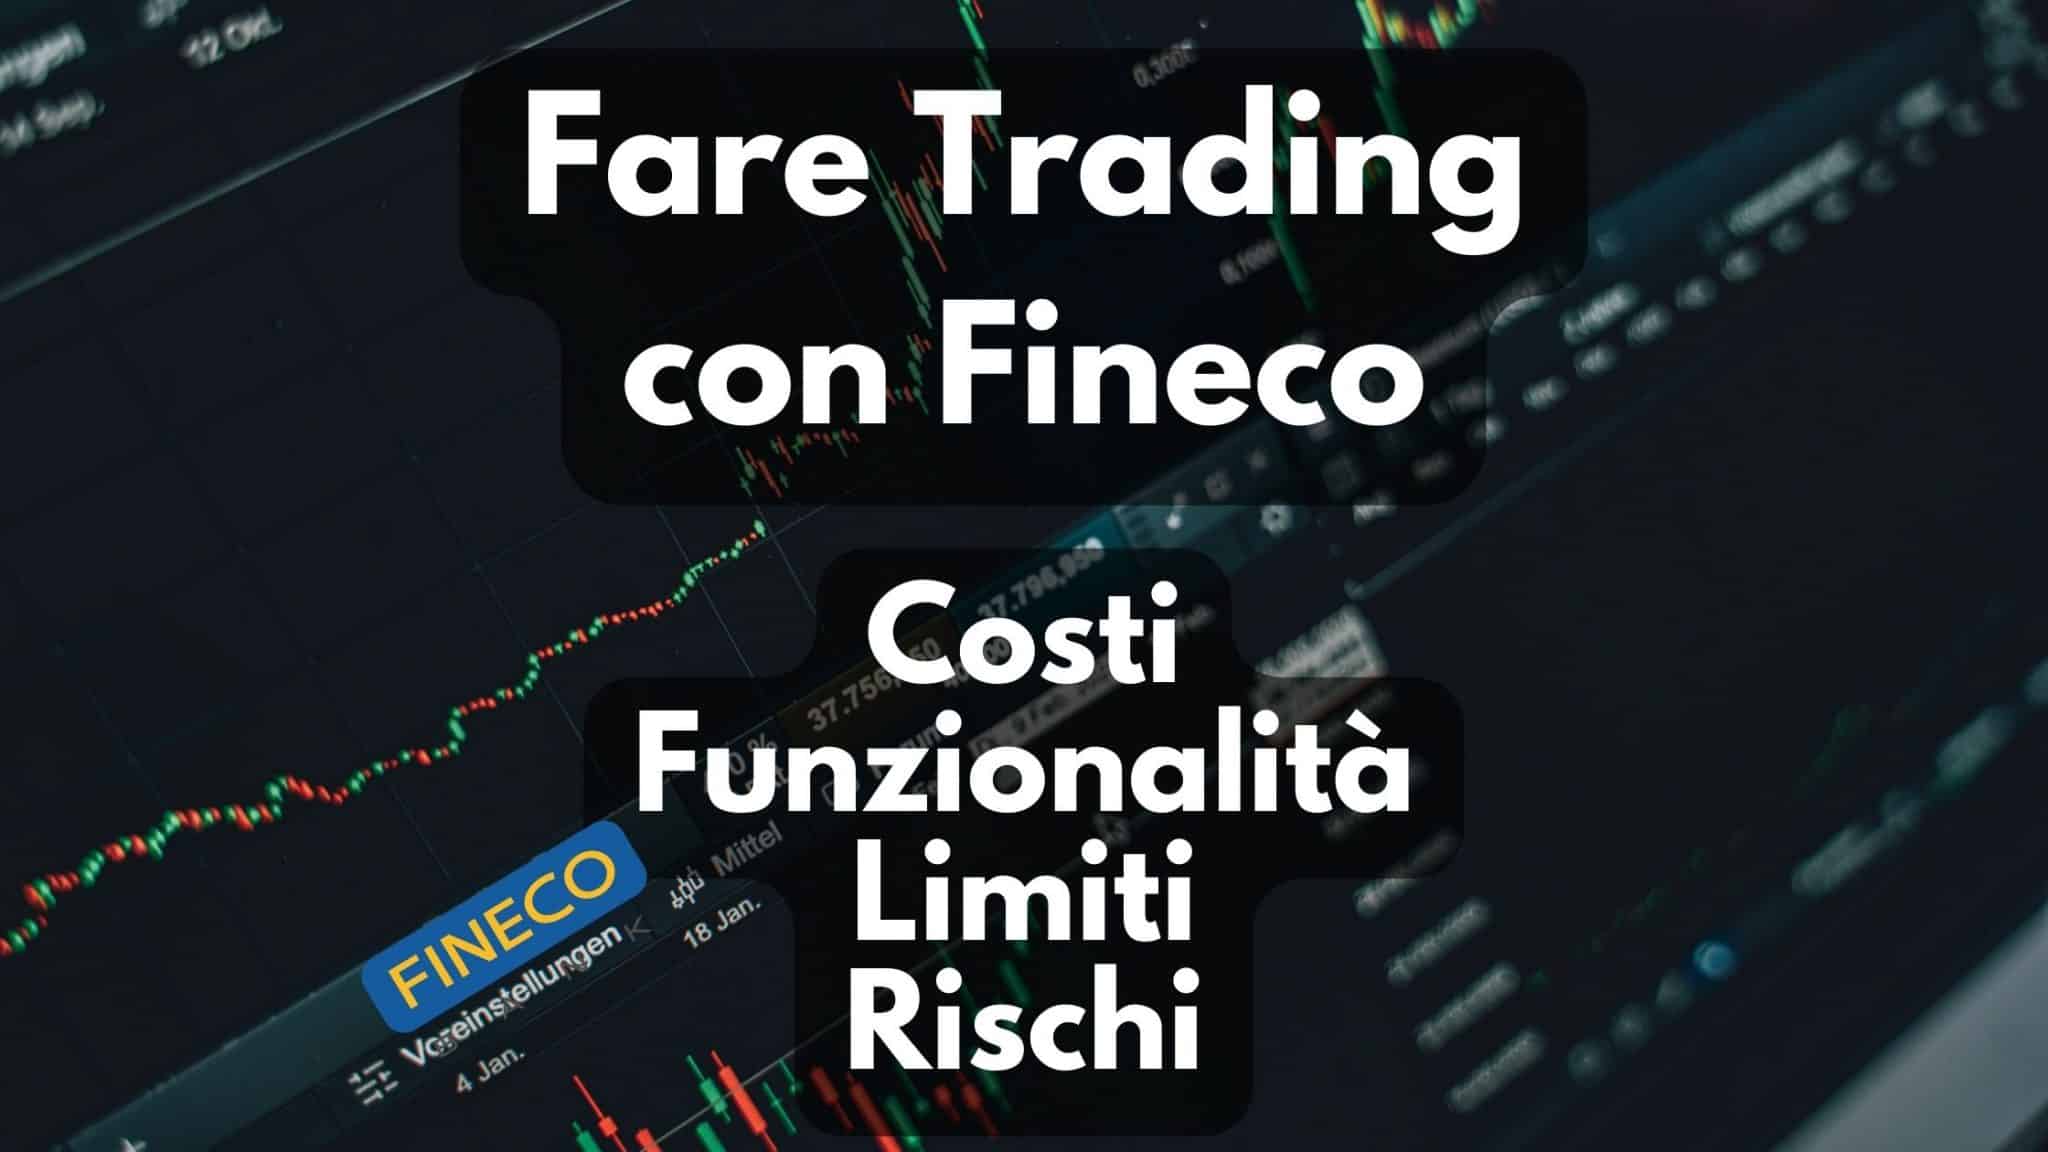 Fare Trading con Fineco